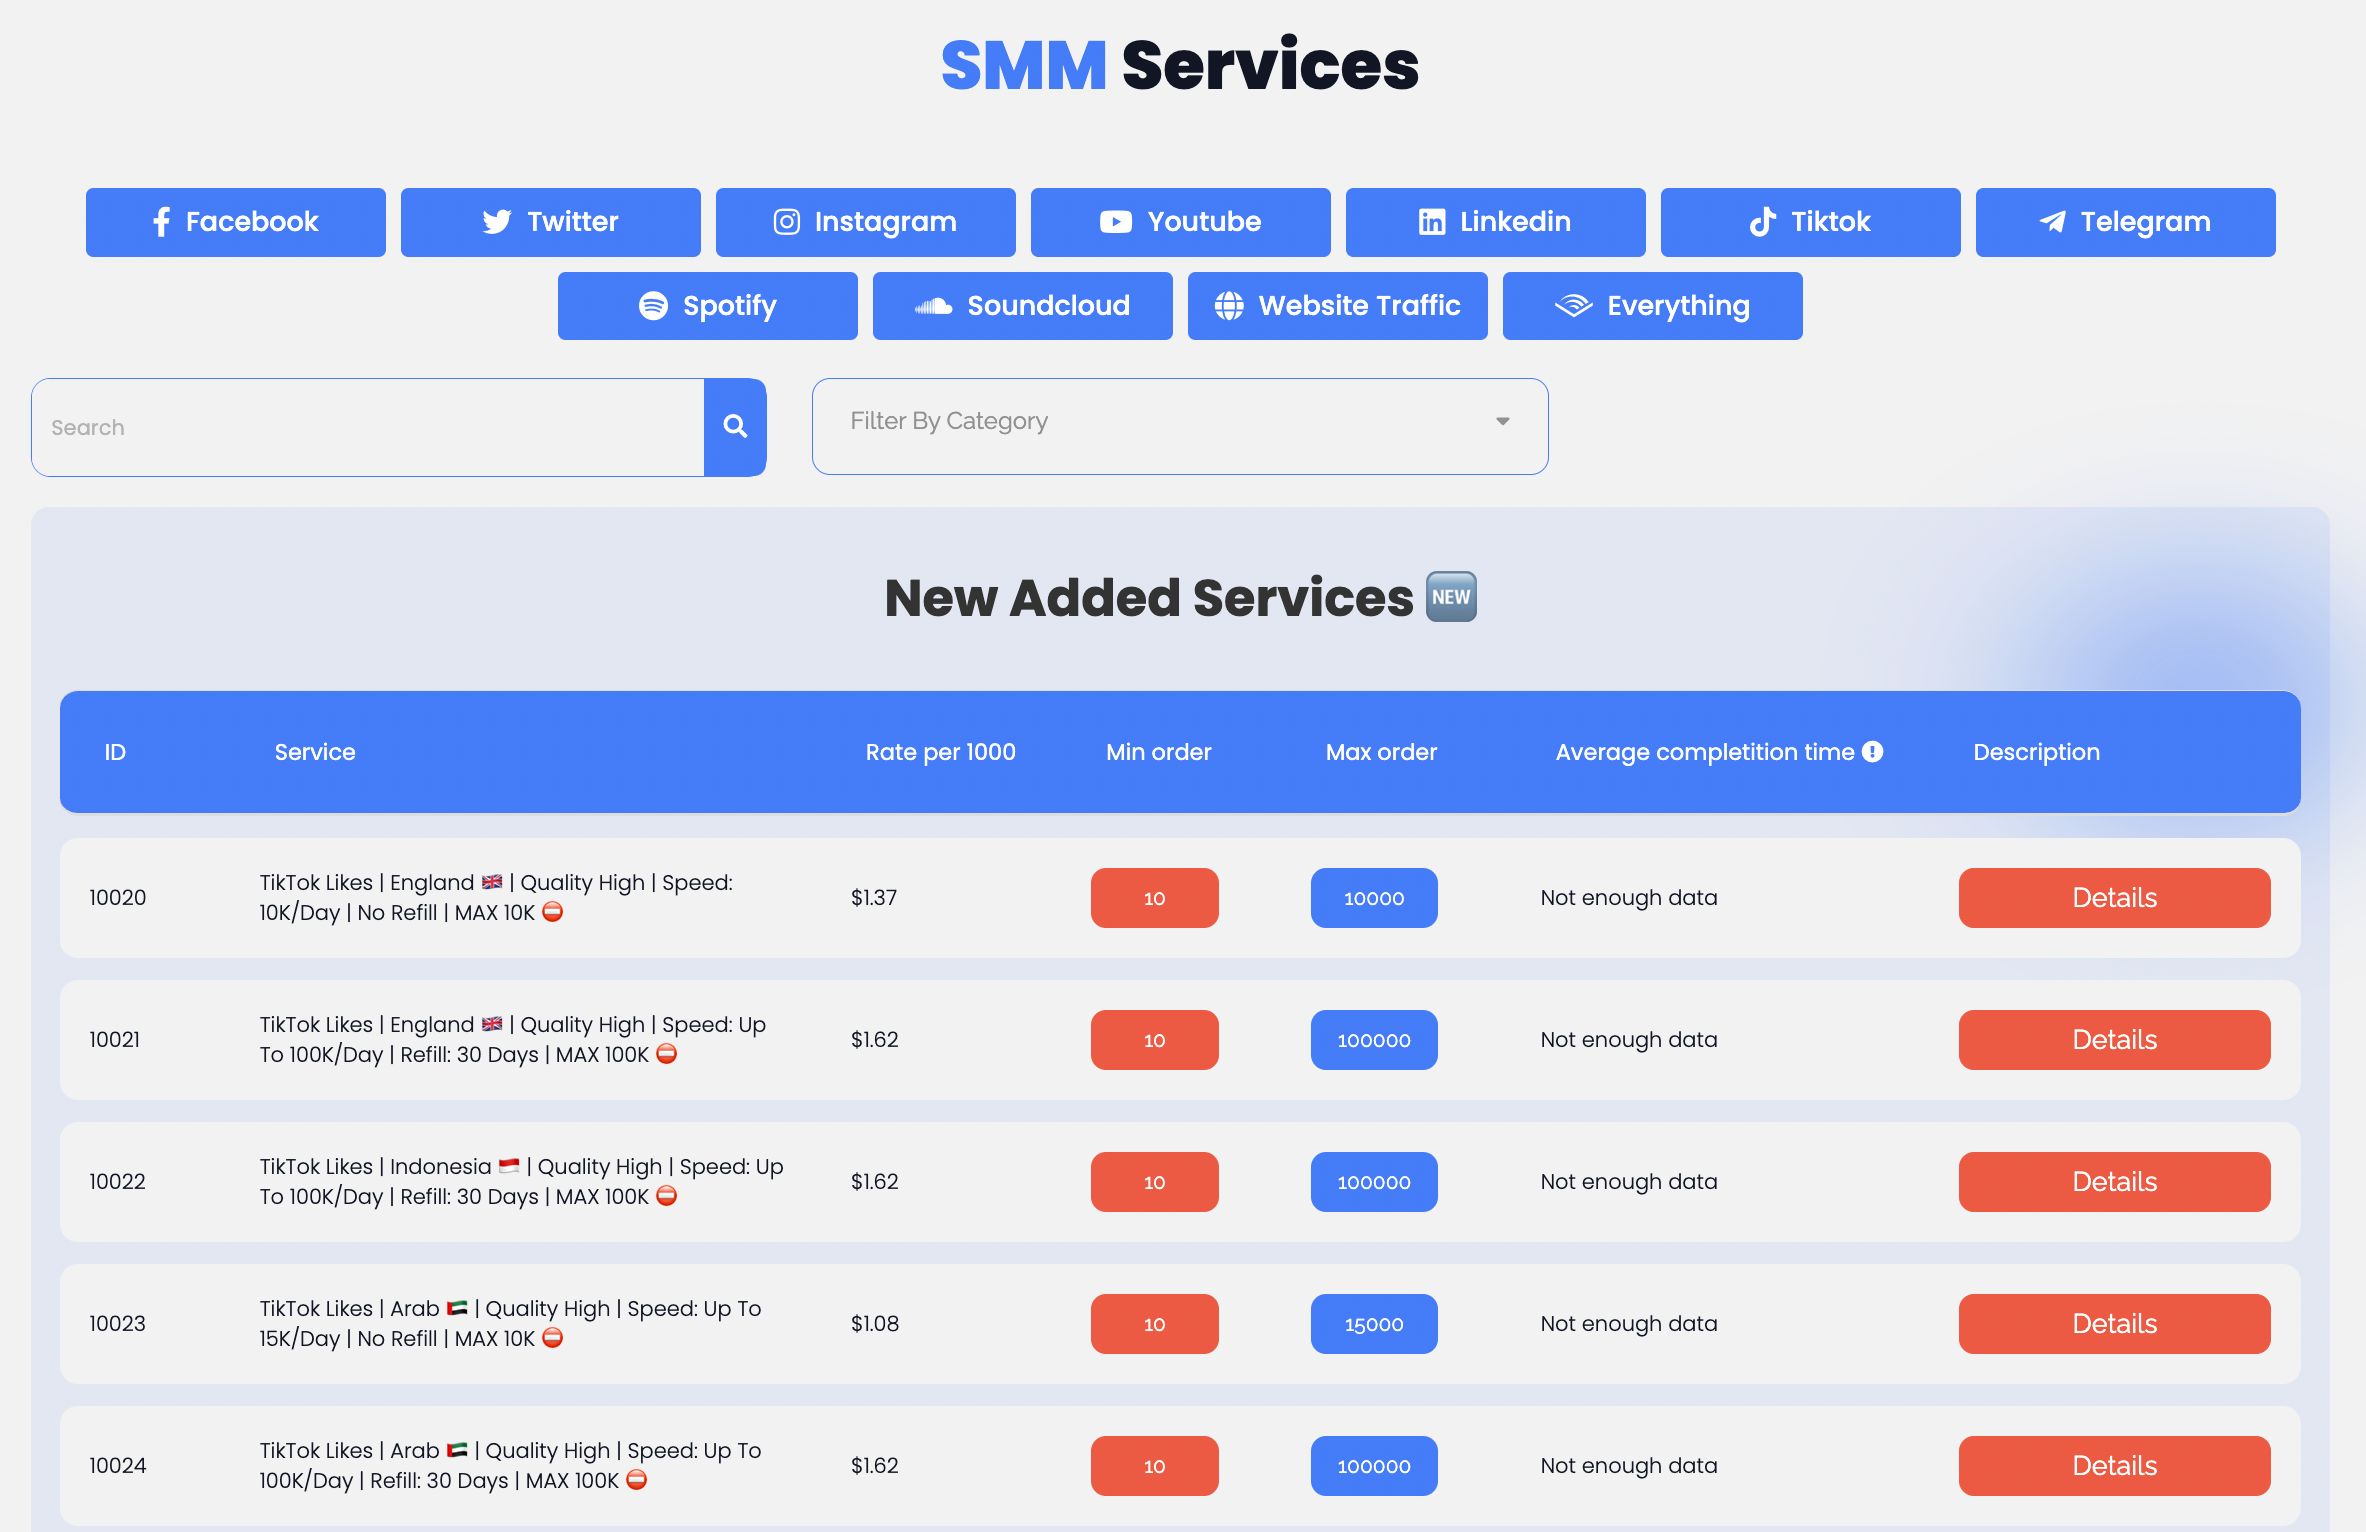 SmmFollows Services